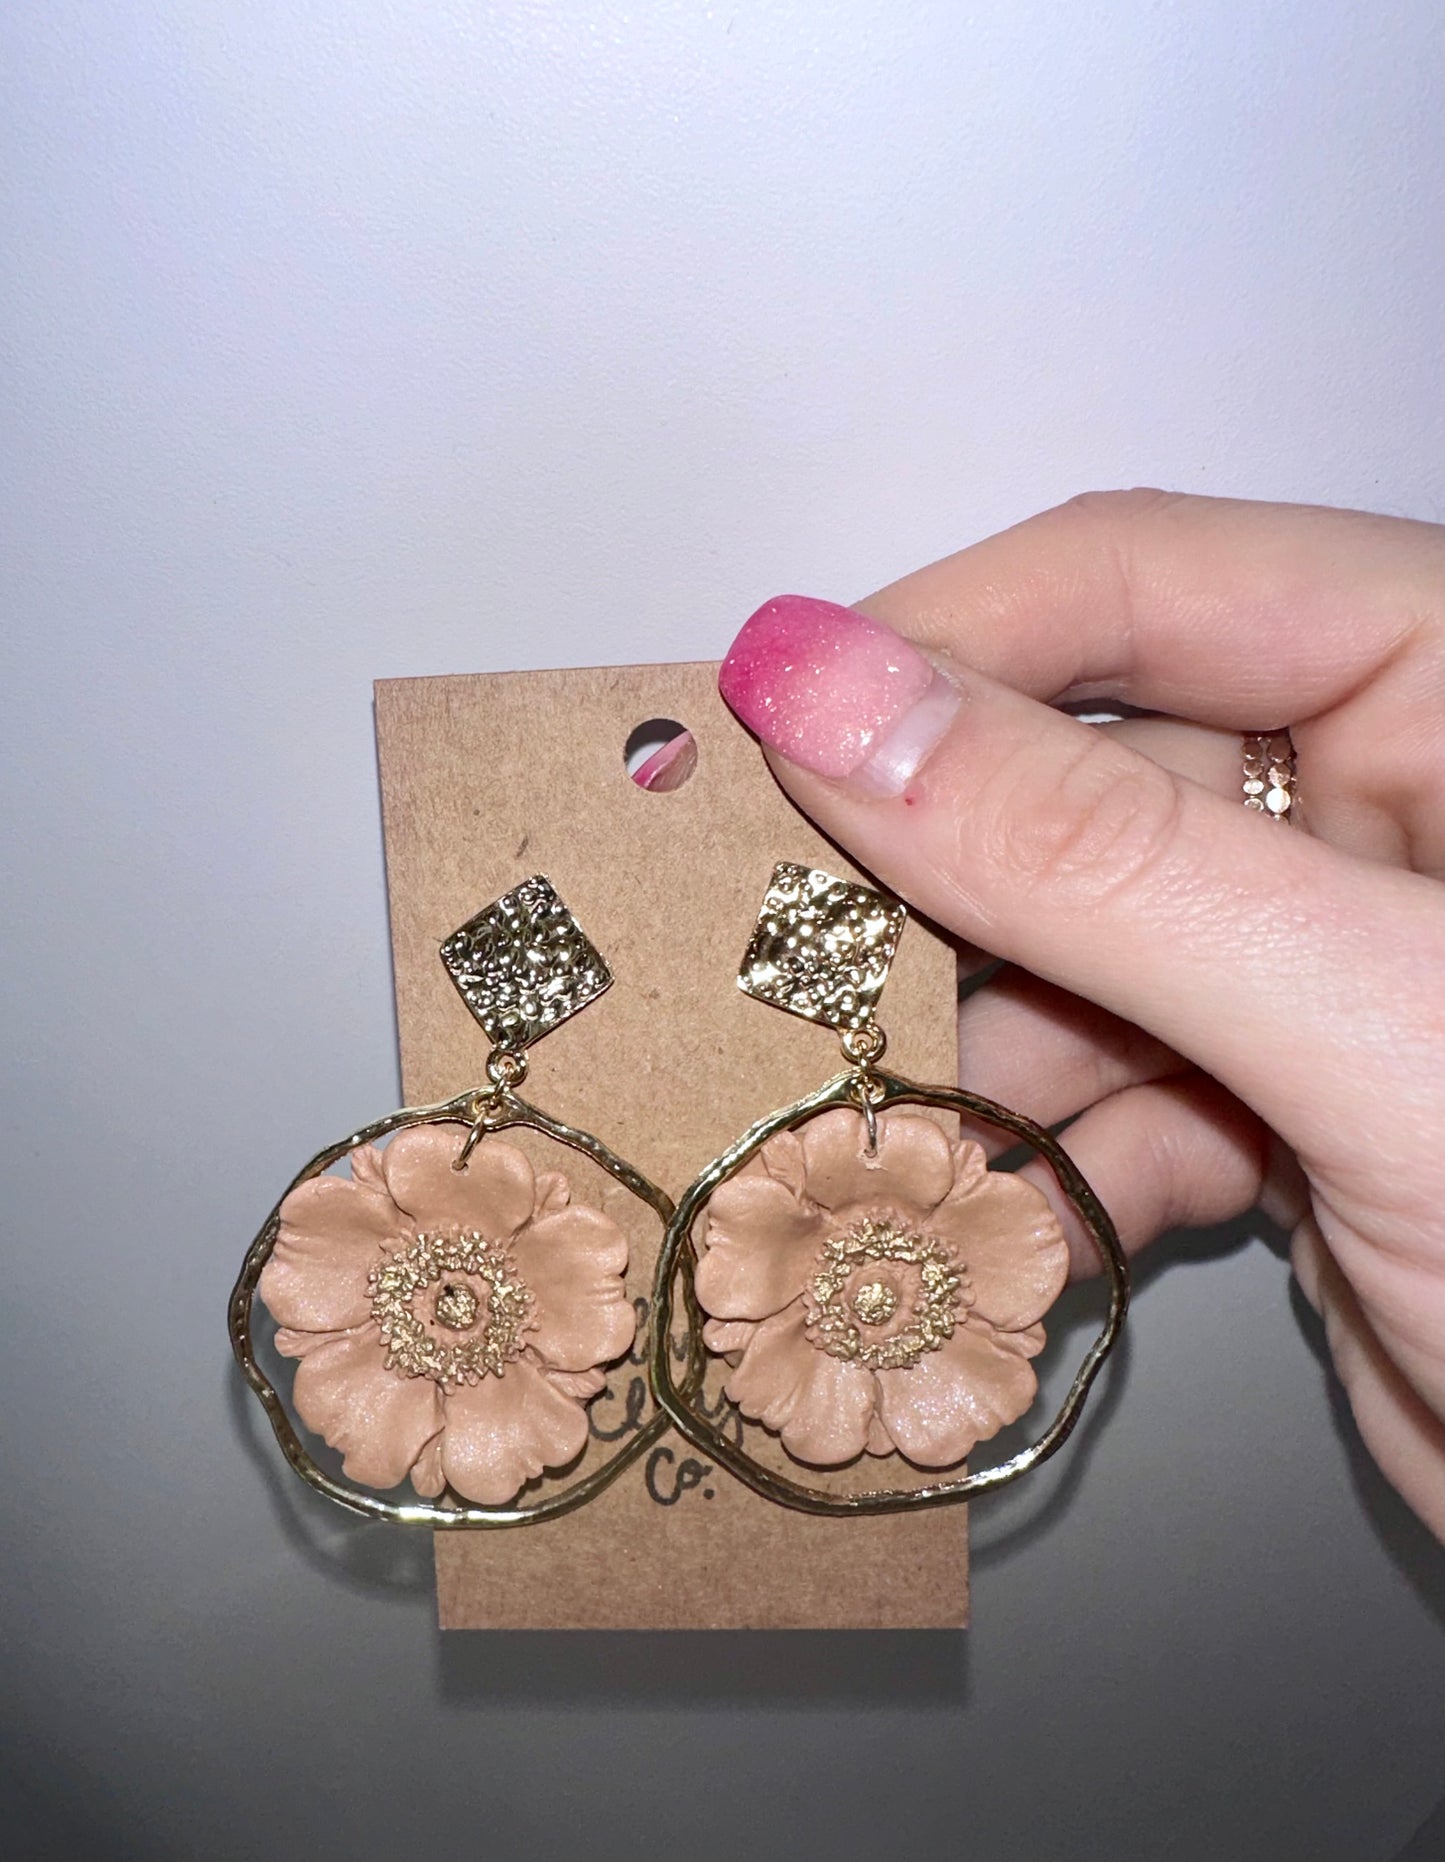 Poppy flower earrings